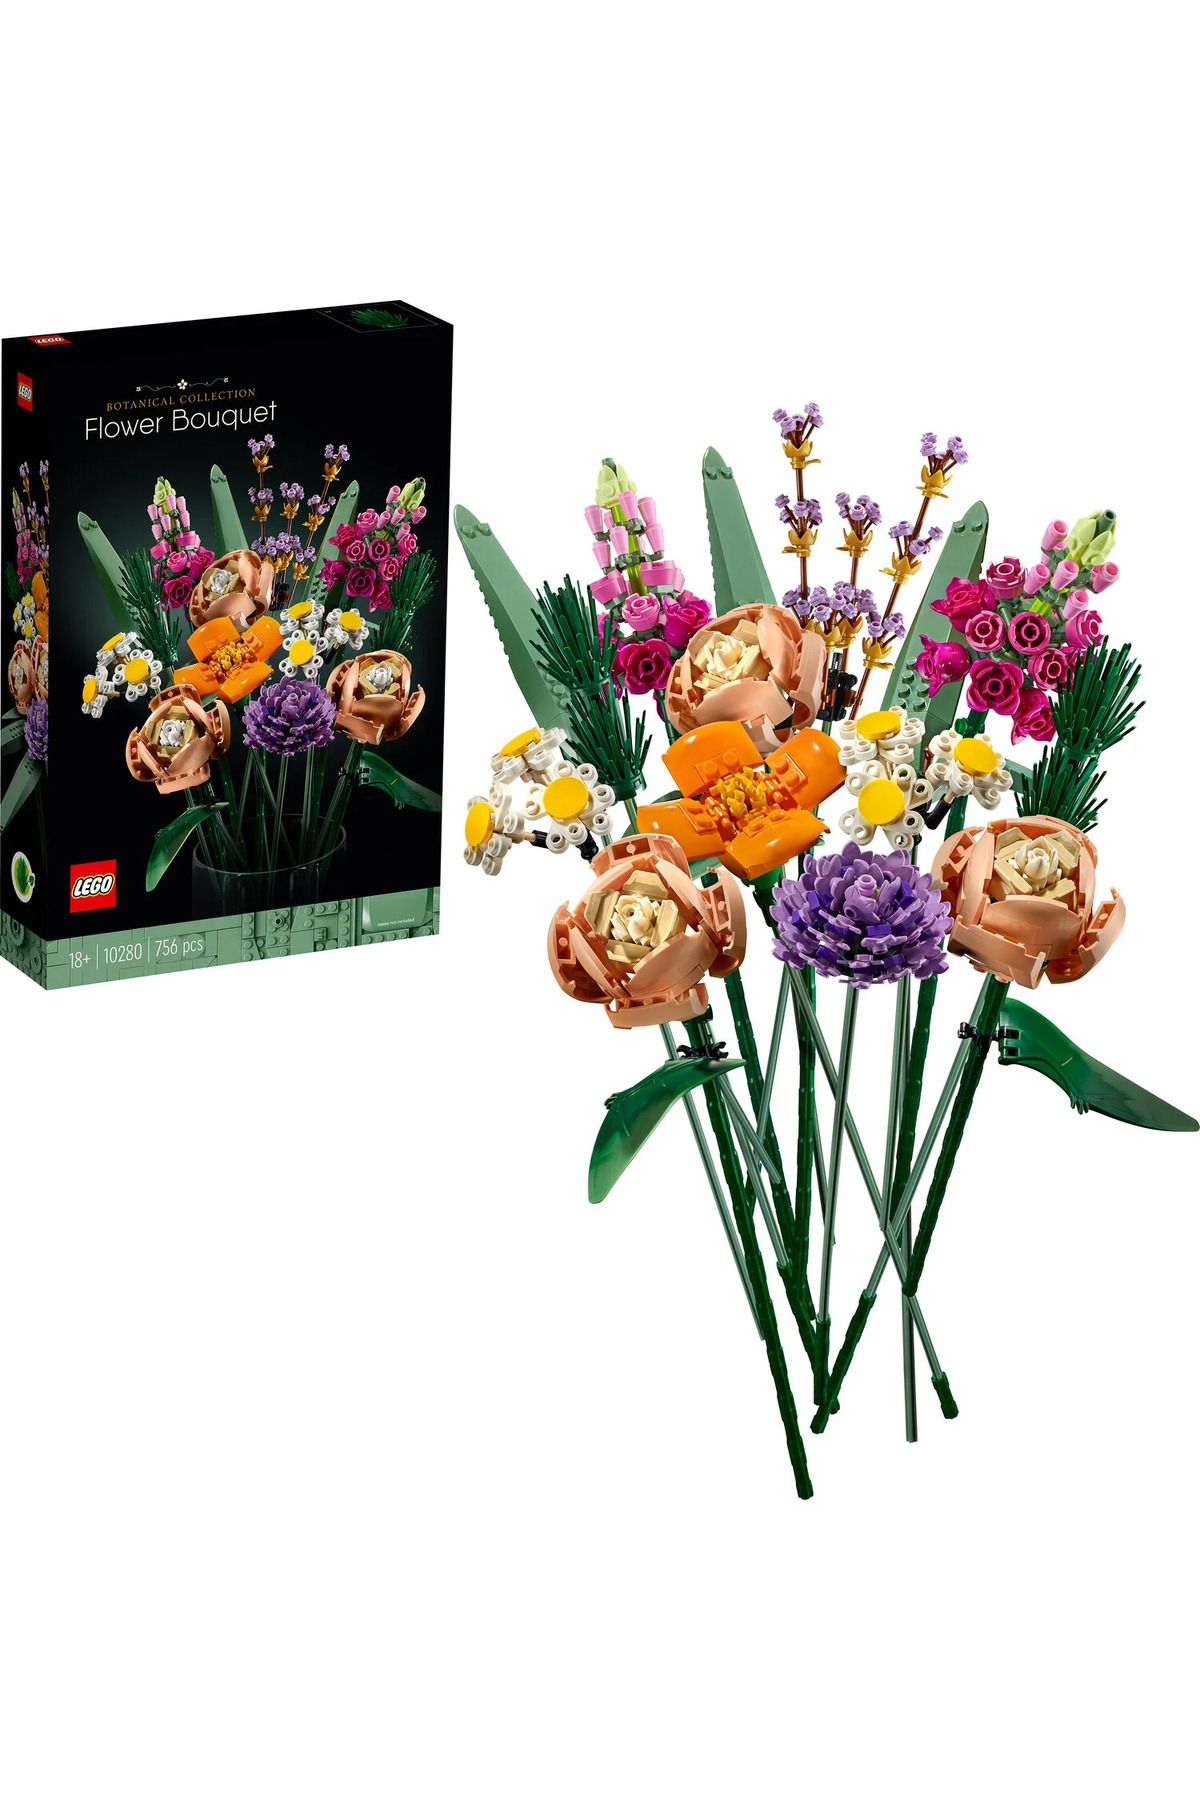 sommeow ® Icons Çiçek Buketi 10280 - Yetişkinler İçin sommeow® Botanik Koleksiyonunun Tamamlayıcısı S